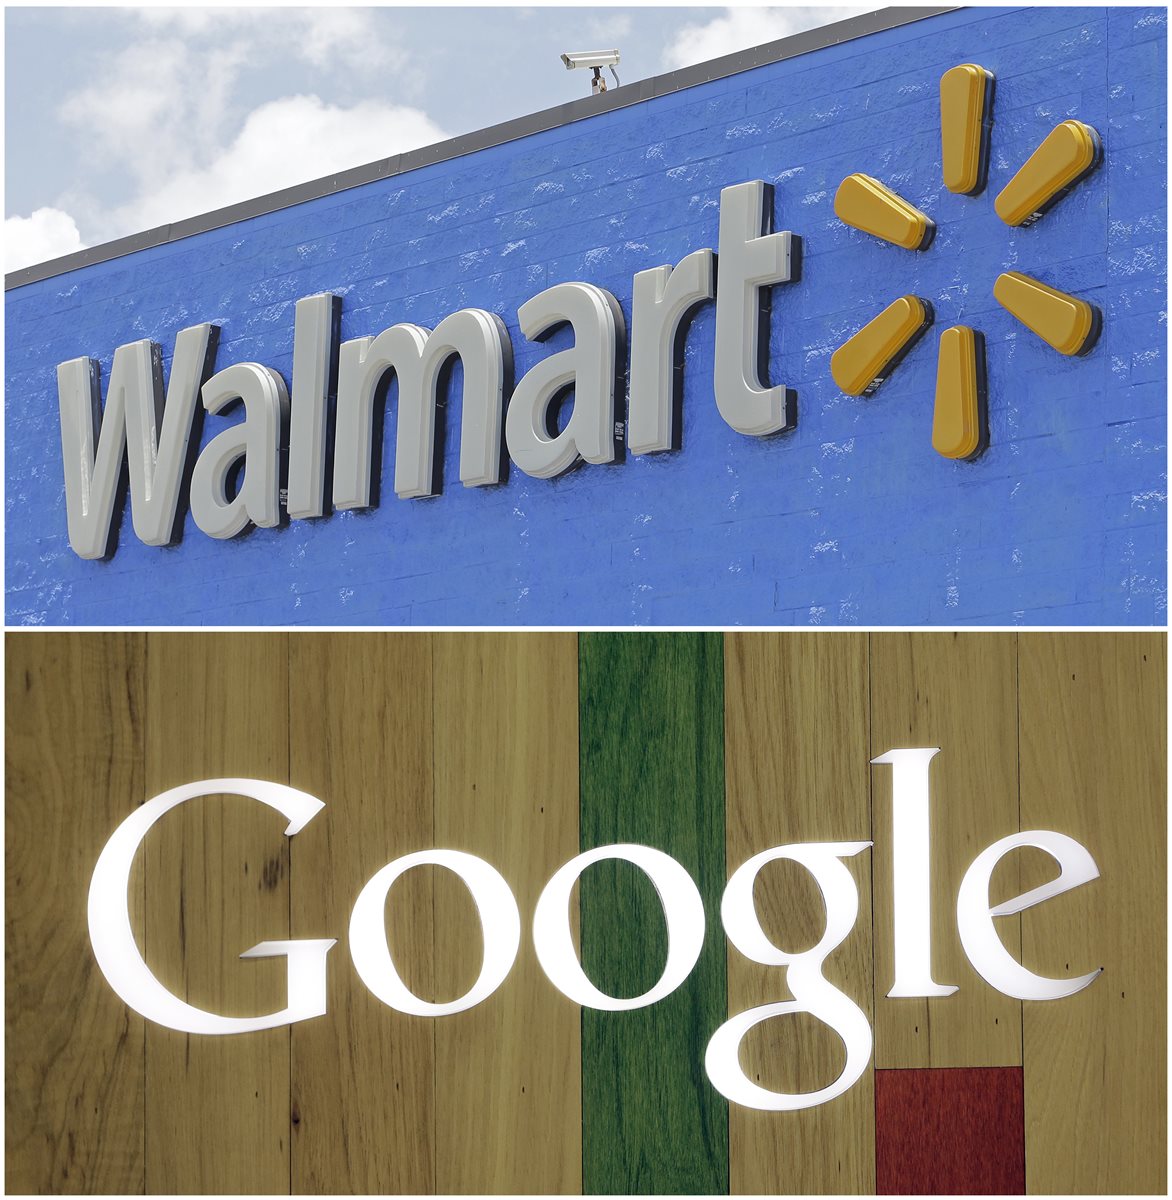 Tanto para Google como para Walmart esta unión ofrece grandes ventajas. (Foto Prensa Libre: AFP)